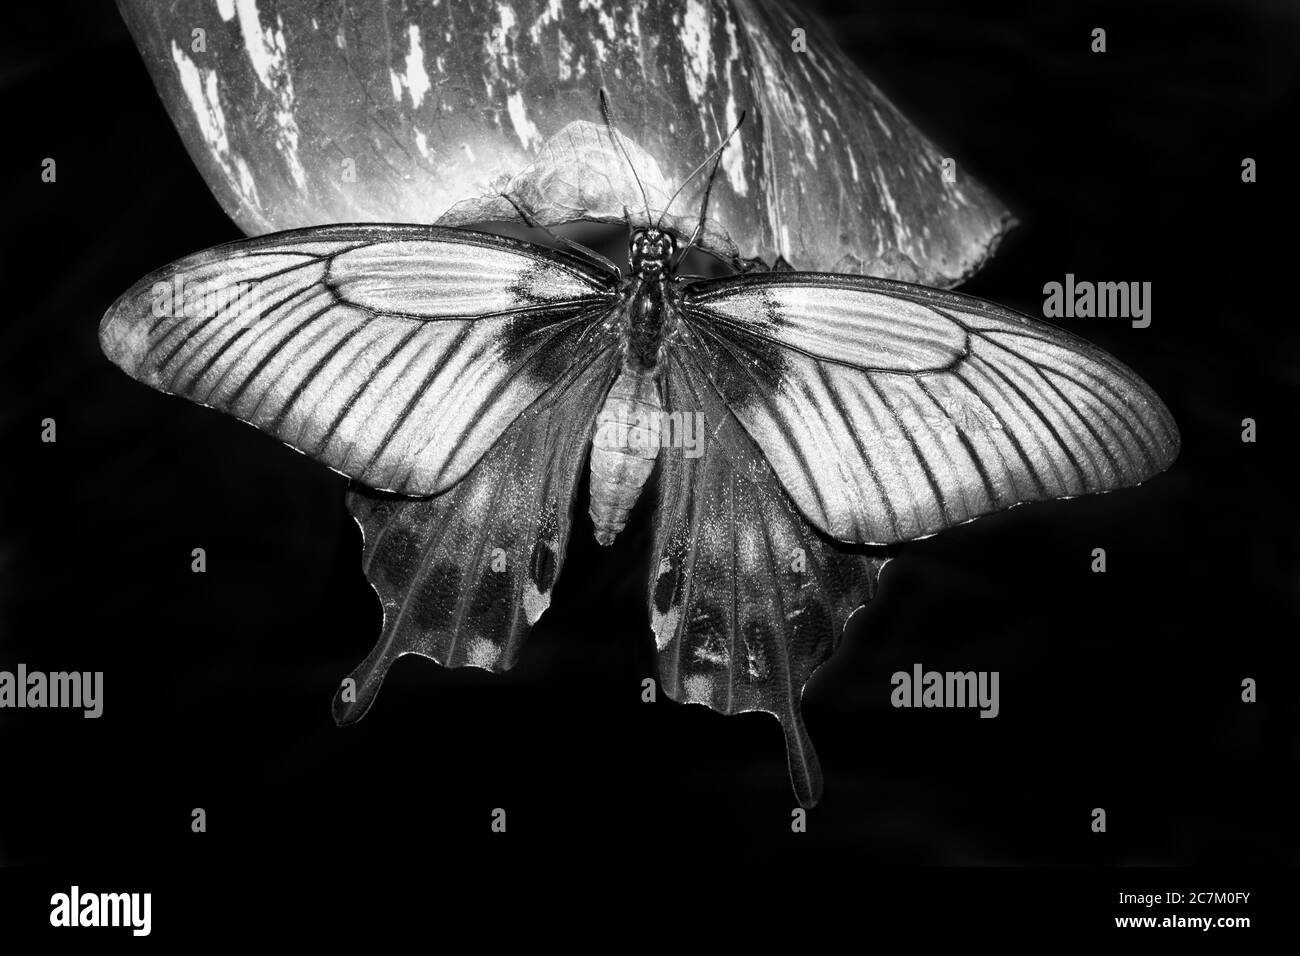 Tropischer Schwalbenschwanz Schmetterling ruht auf einem Blatt schwarz-weiß monochromen Bild Stock Foto Stockfoto